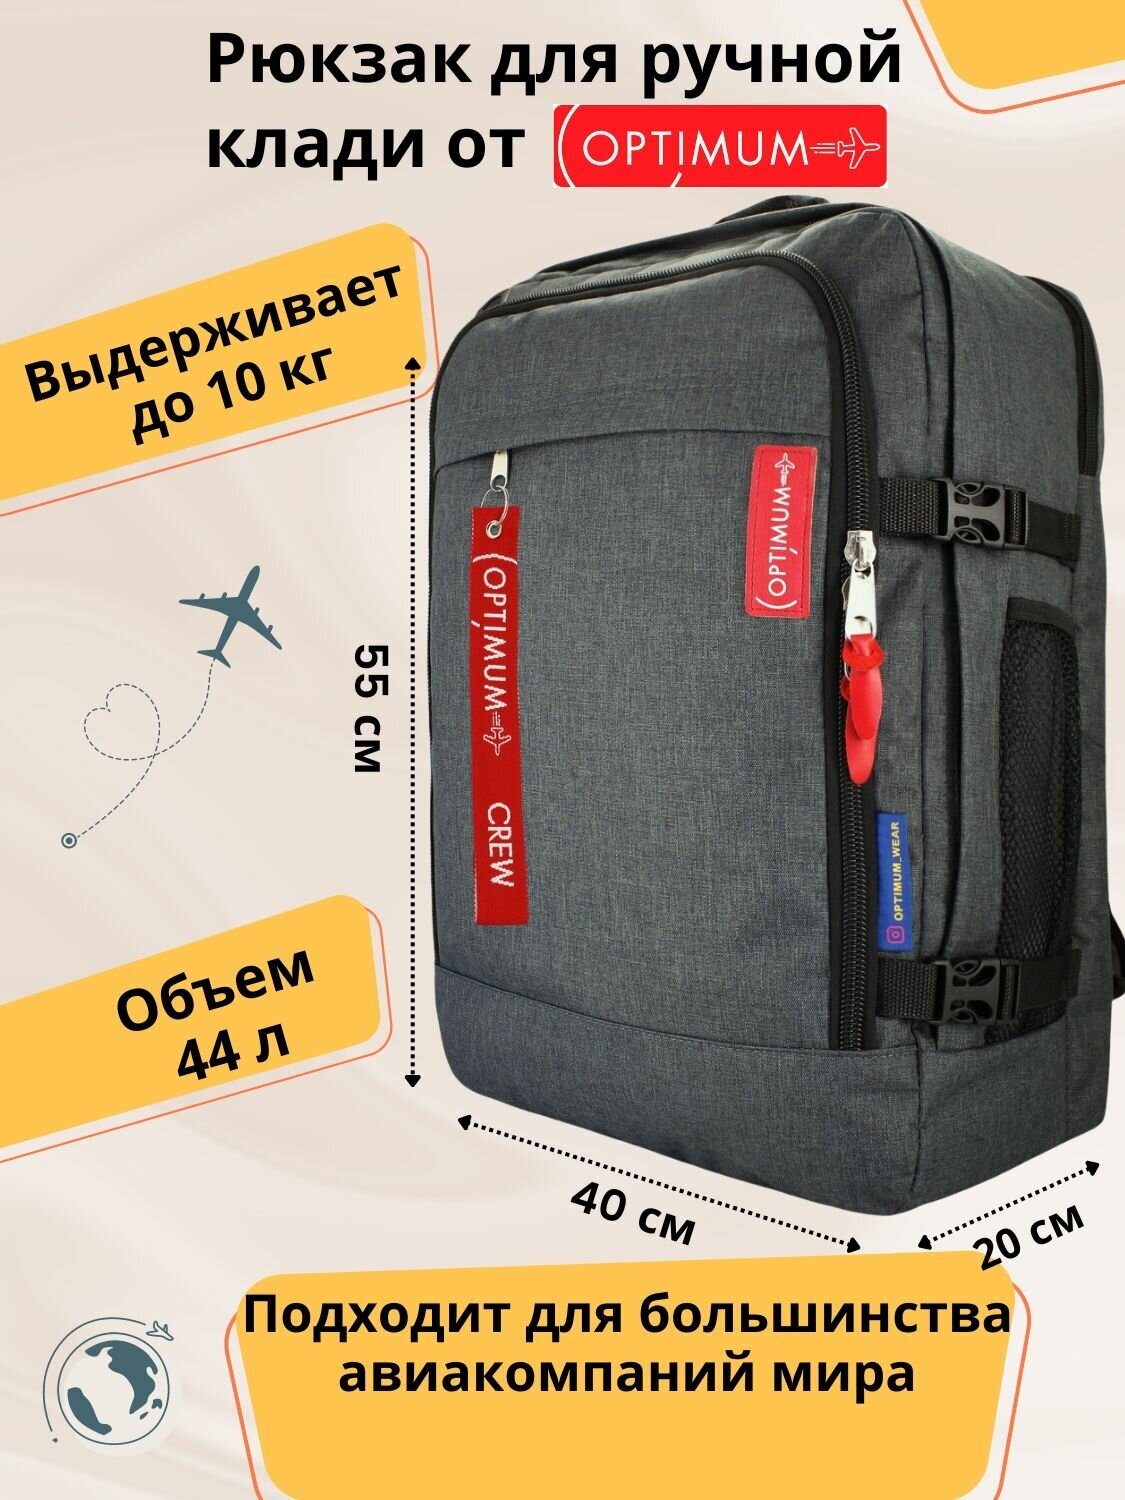 Рюкзак для путешествий дорожный ручная кладь 55х40х20 в самолет 44 л., темно-серый